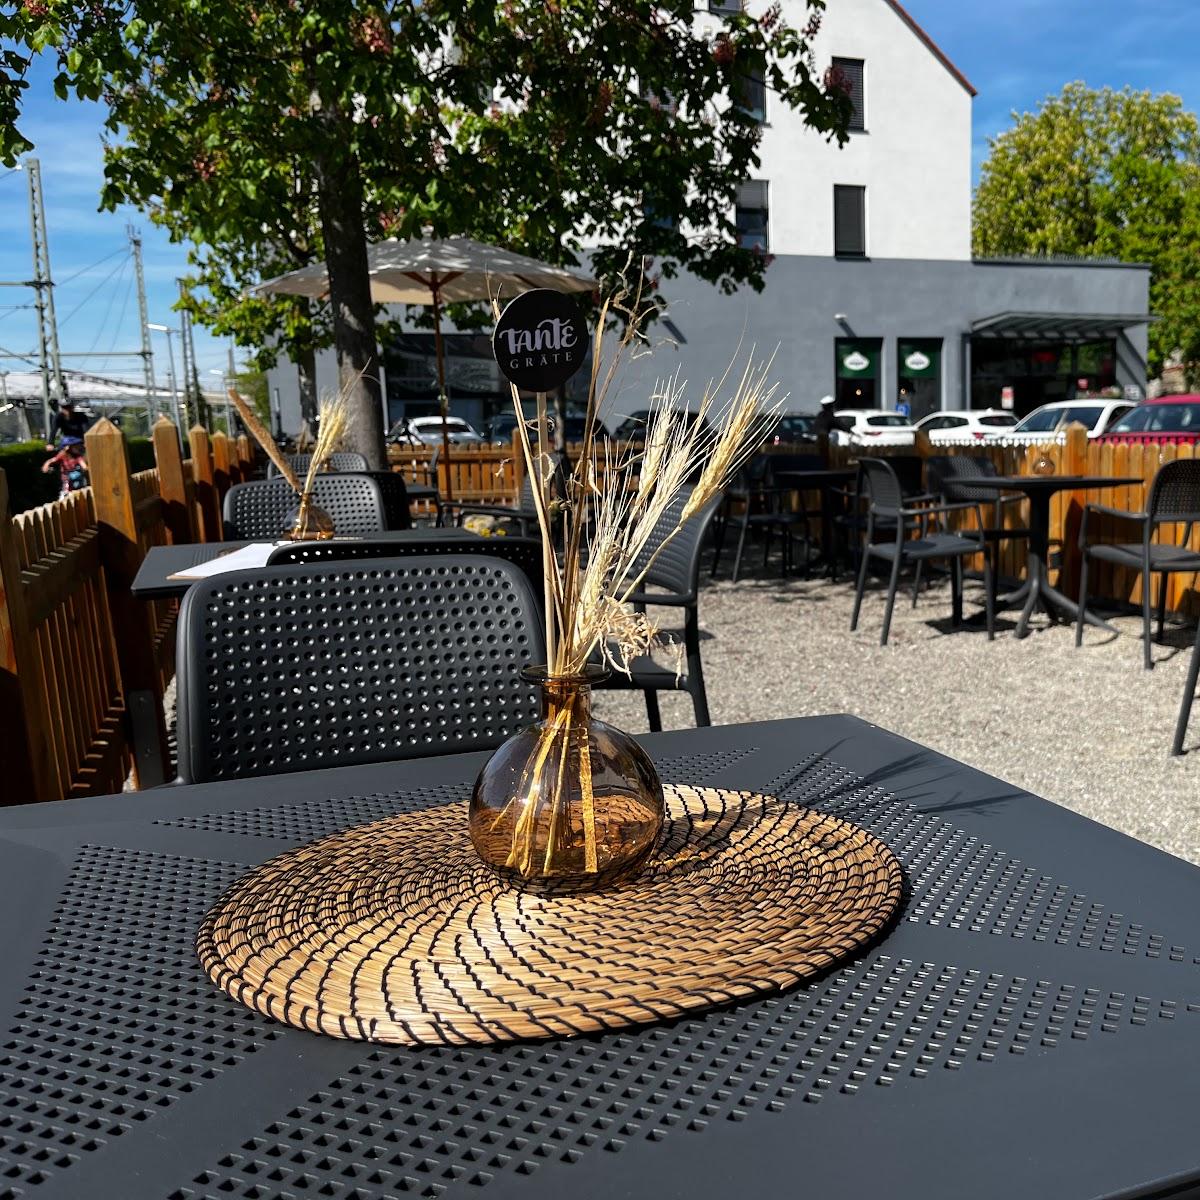 Restaurant "Tante Gräte" in Lindau (Bodensee)